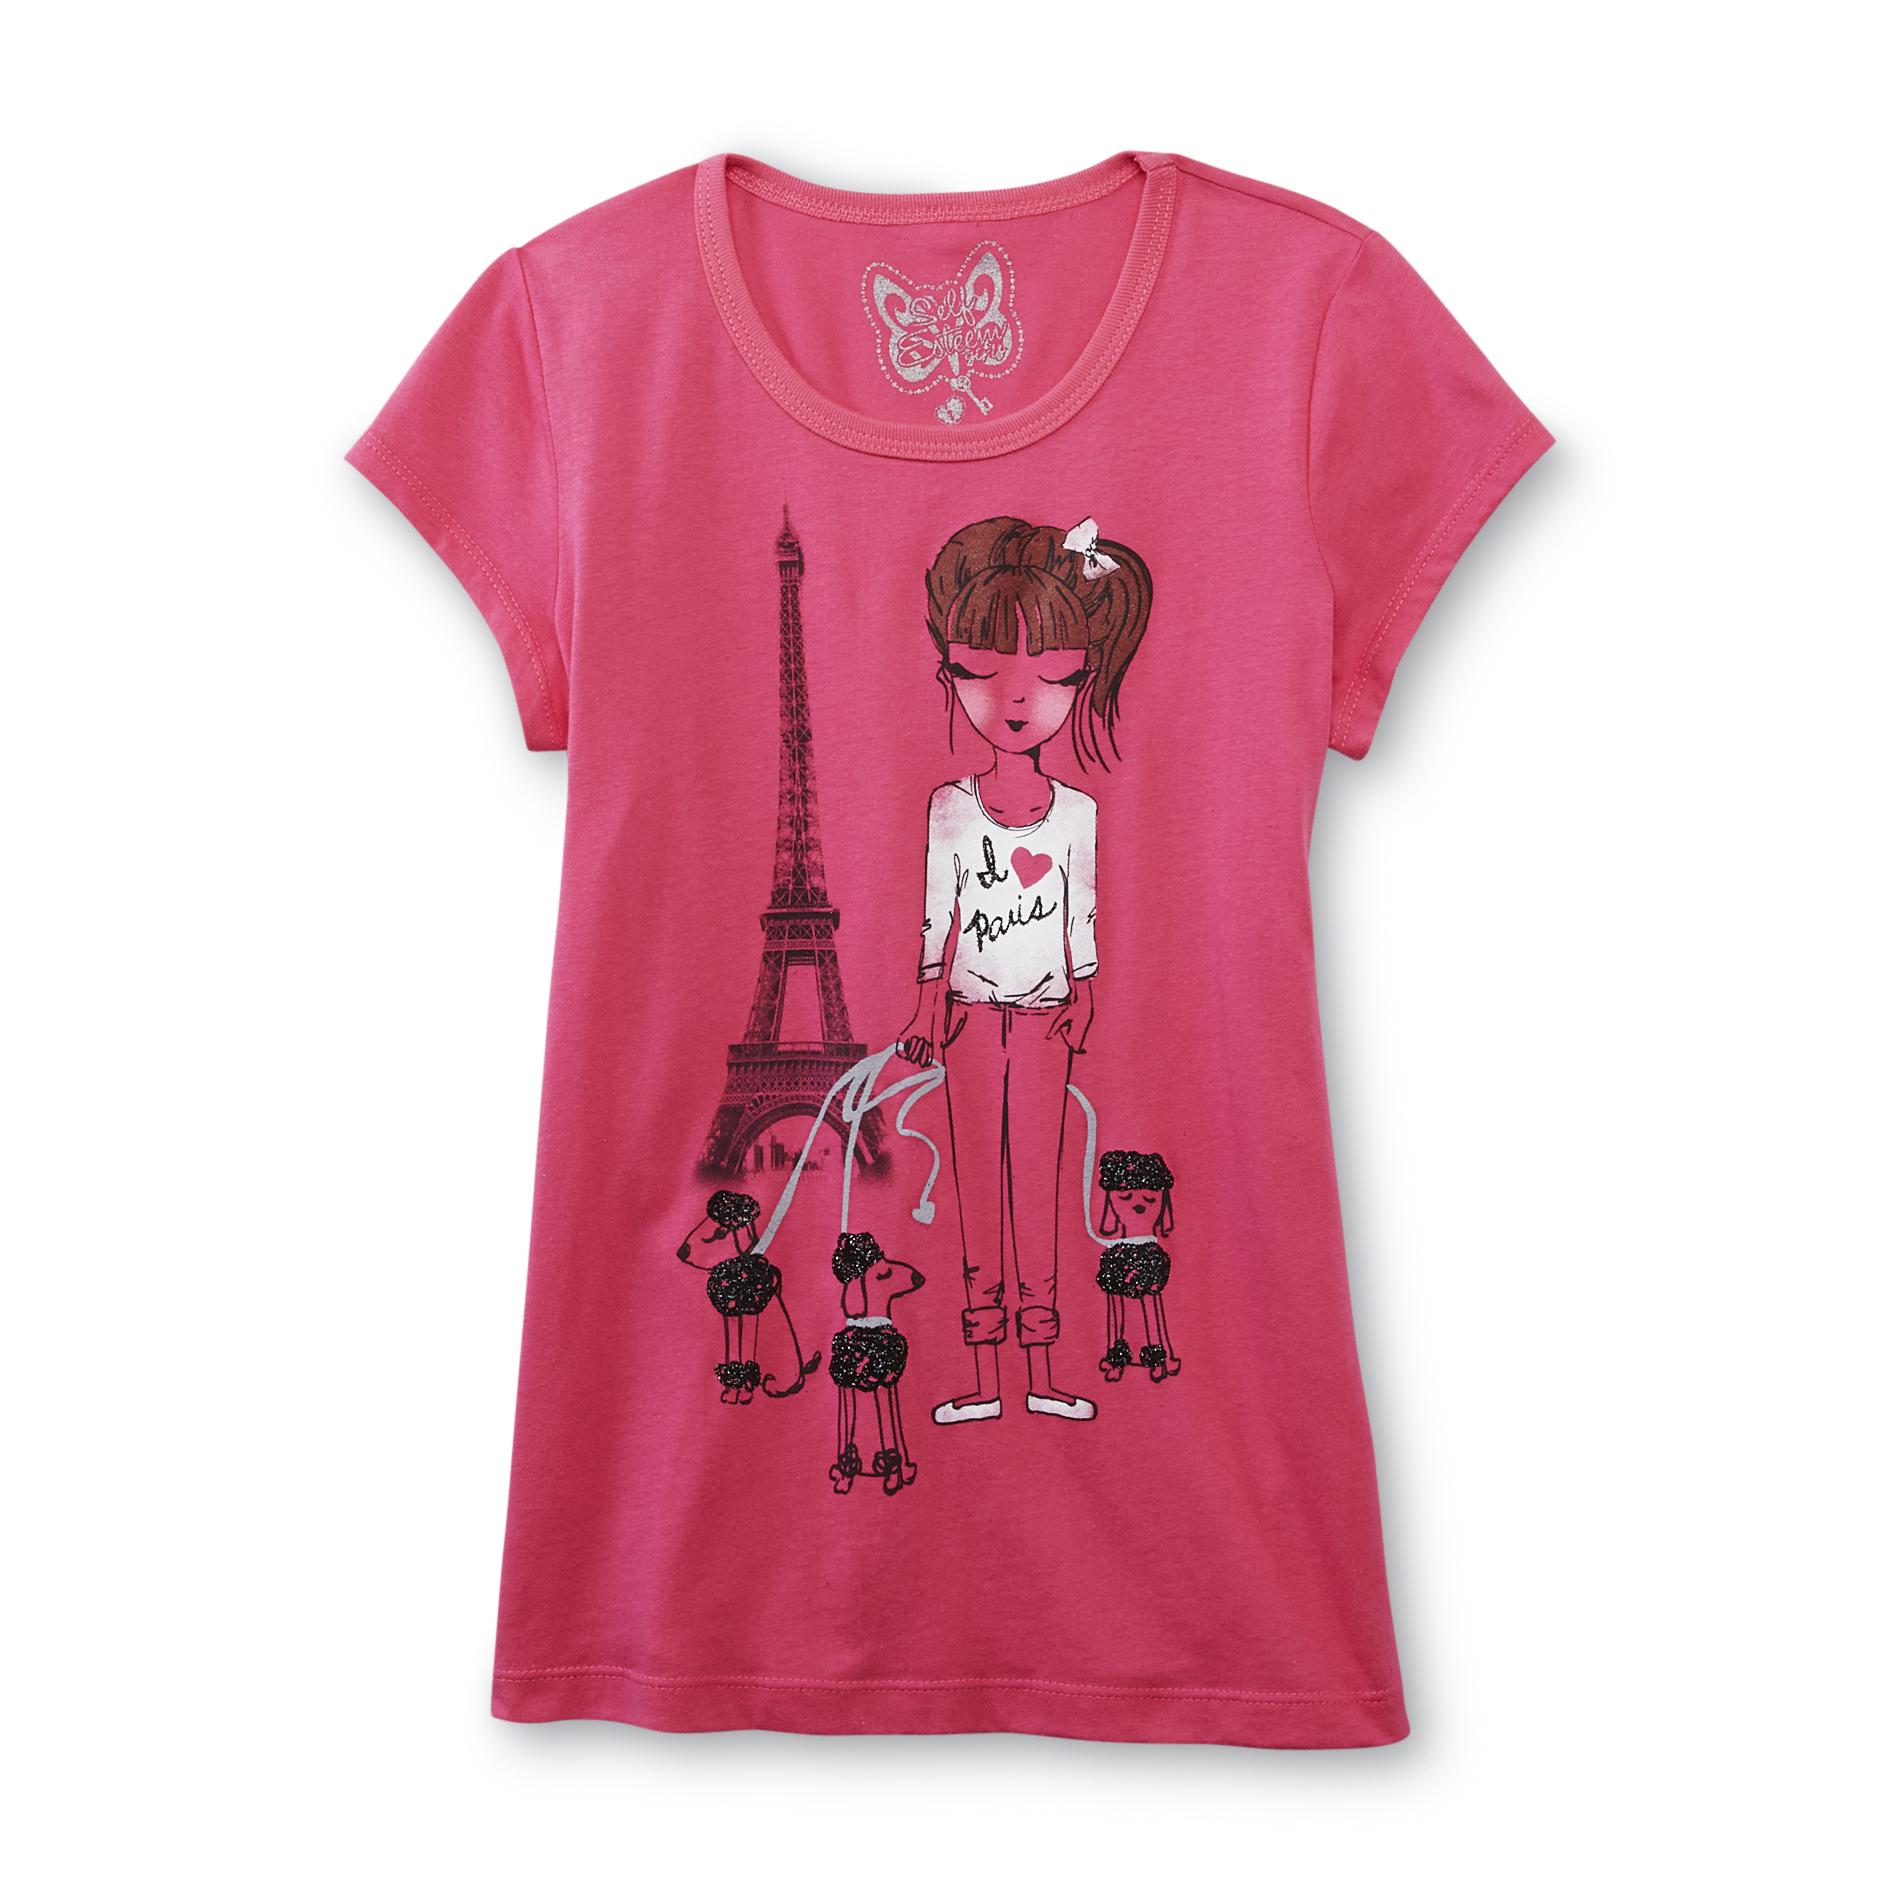 Self Esteem Girl's Graphic T-Shirt - Paris